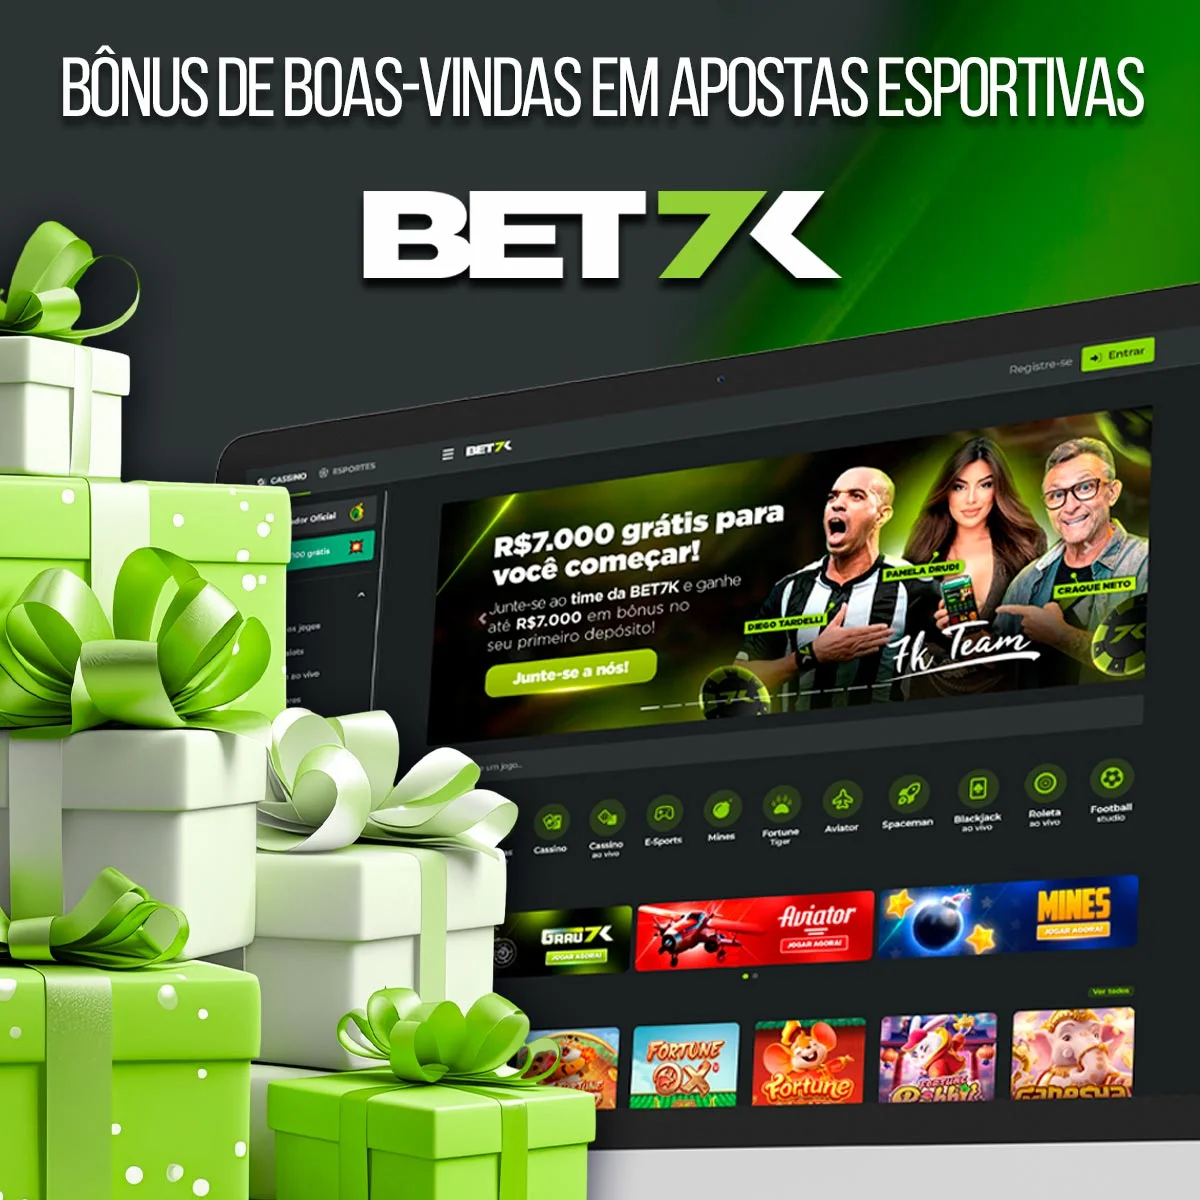 Visão geral do bônus de esportivas da casa de apostas Bet7k no Brasil